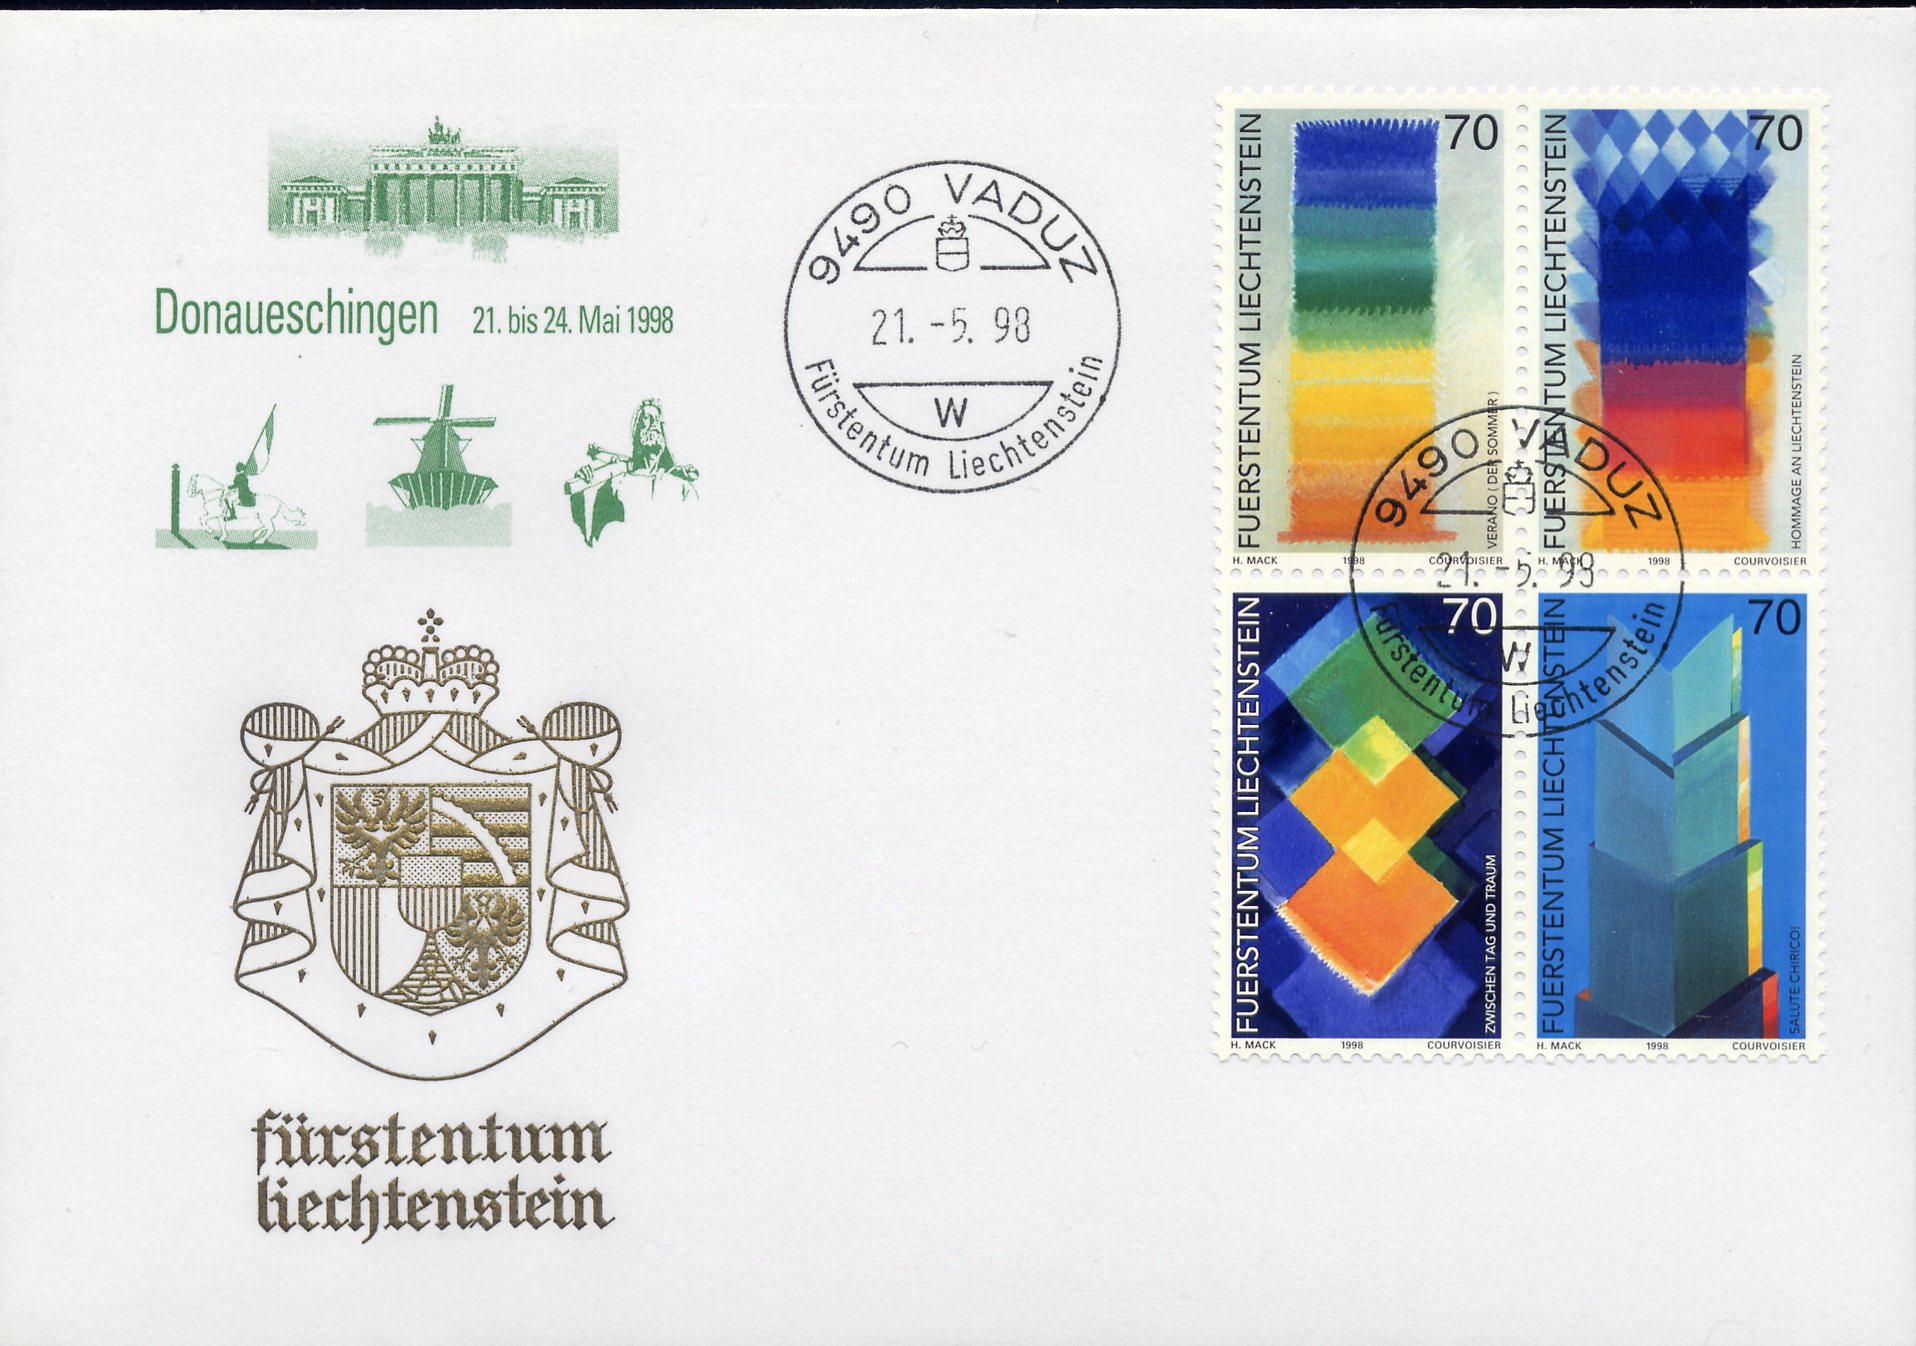 https://swiss-stamps.org/wp-content/uploads/2023/12/1998-5-Donaueschingen.jpg